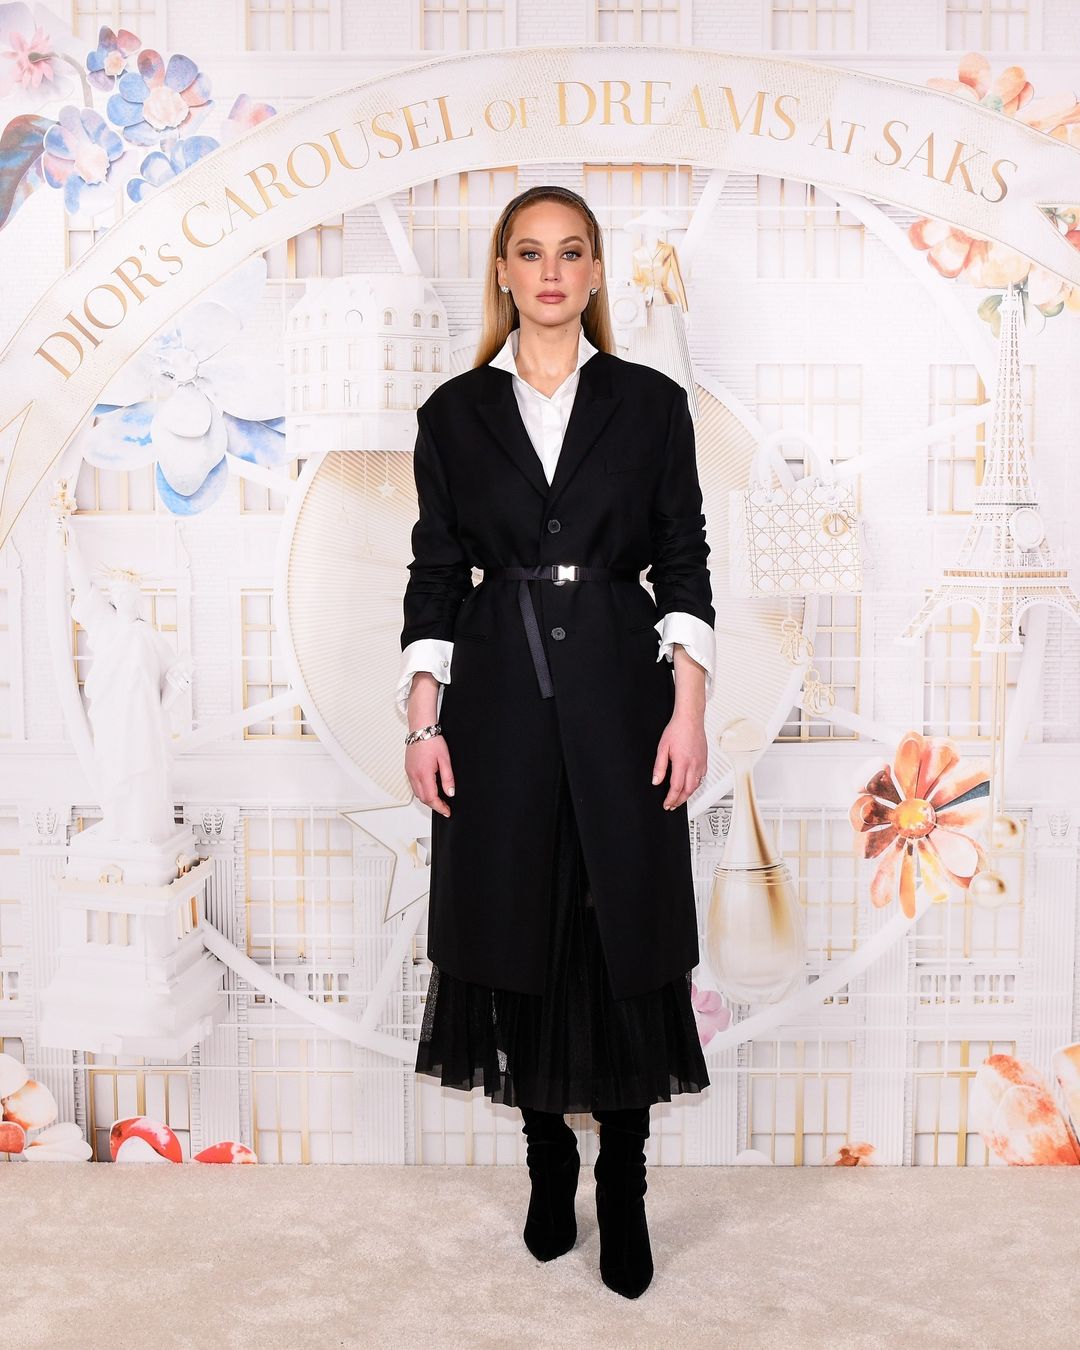 Ο Dior και τα Saks συνεργάζονται και δημιουργούν το πιο ονειρικό Carousel για τα Χριστούγεννα